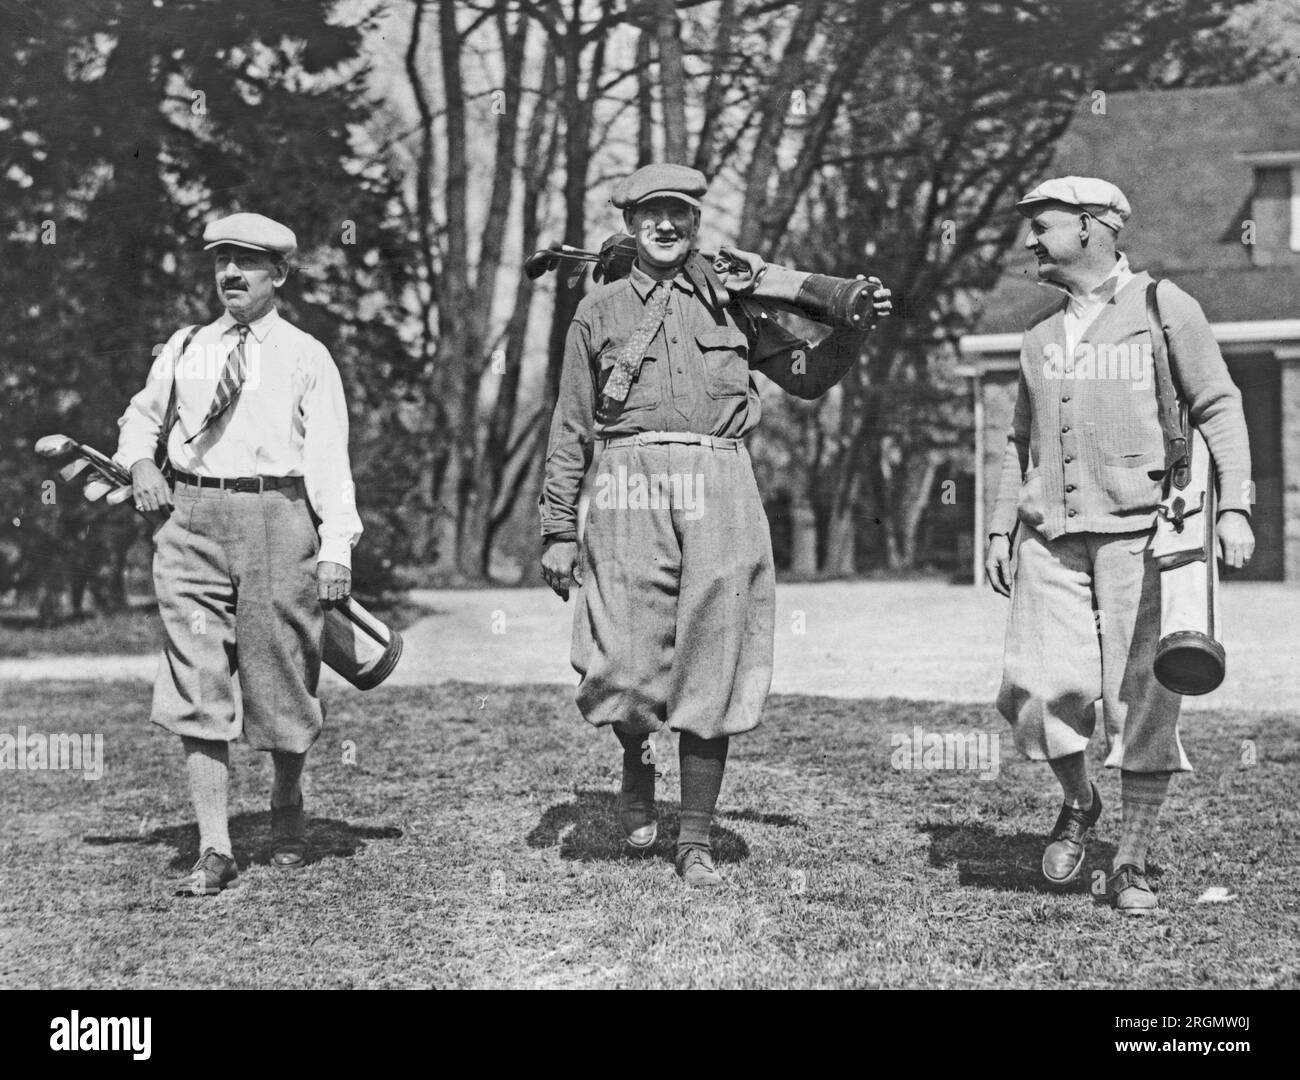 Oggi i membri del Congresso si sono divertiti sui campi da golf del Chevy Chase Club. Da sinistra a destra: Rep. Herbert W. Taylor di N.J., Rep. Albert H. Vestal dell'Indiana, The Republican Whip of the House, e Rep. WM. R. Coyle di Pa. CA. 1926 Foto Stock